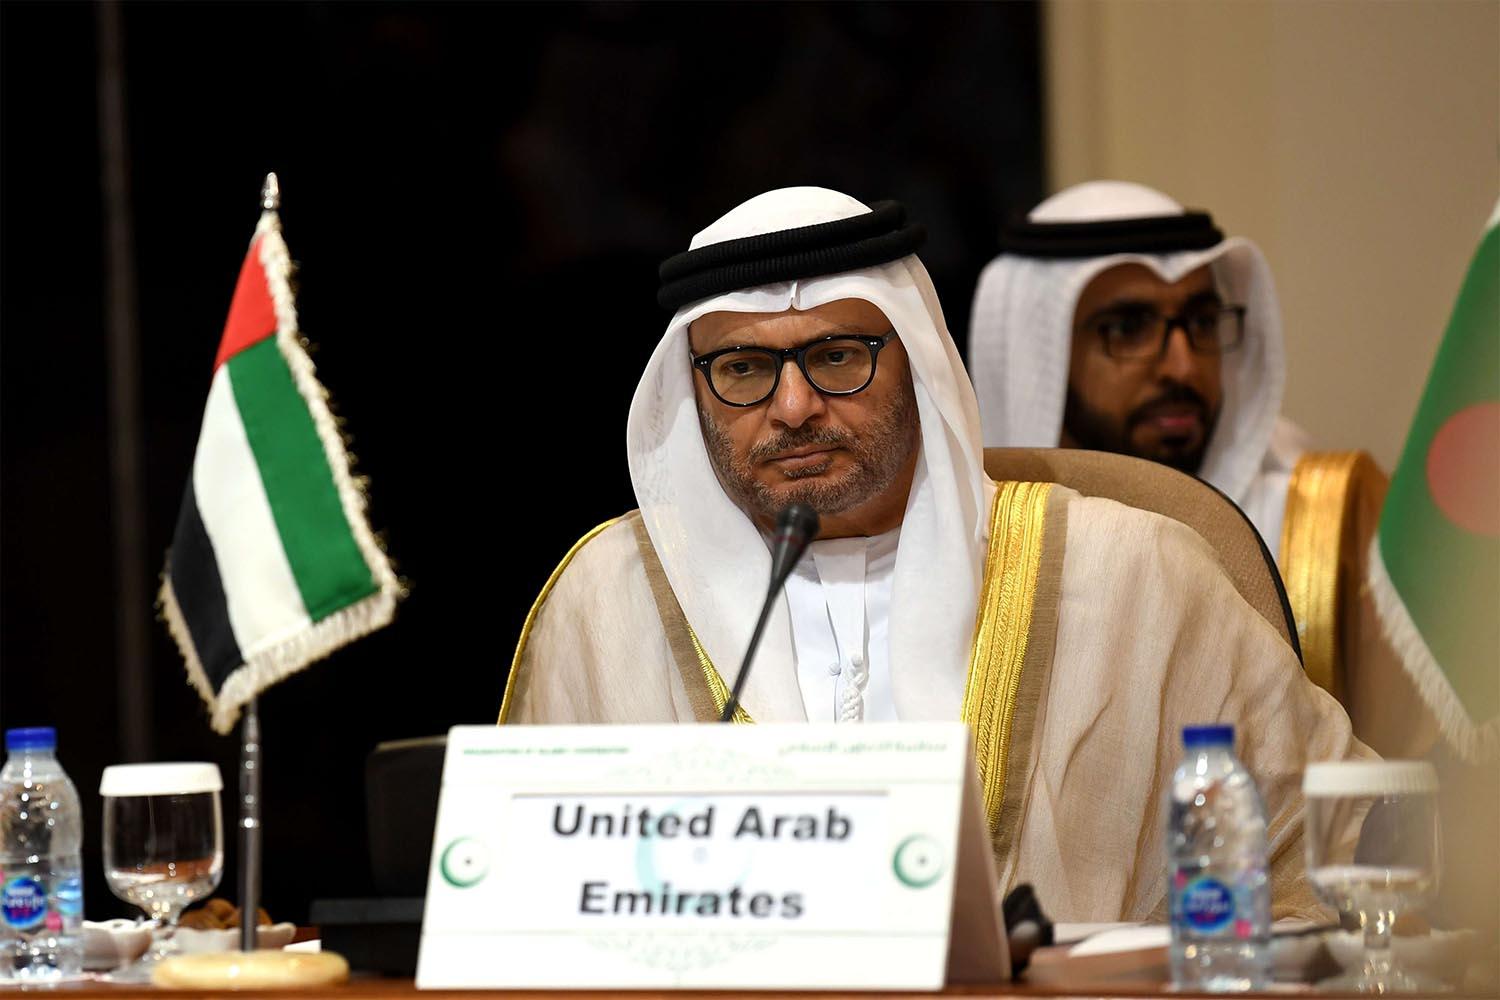 UAE calls for 'wisdom' amid fears of escalation